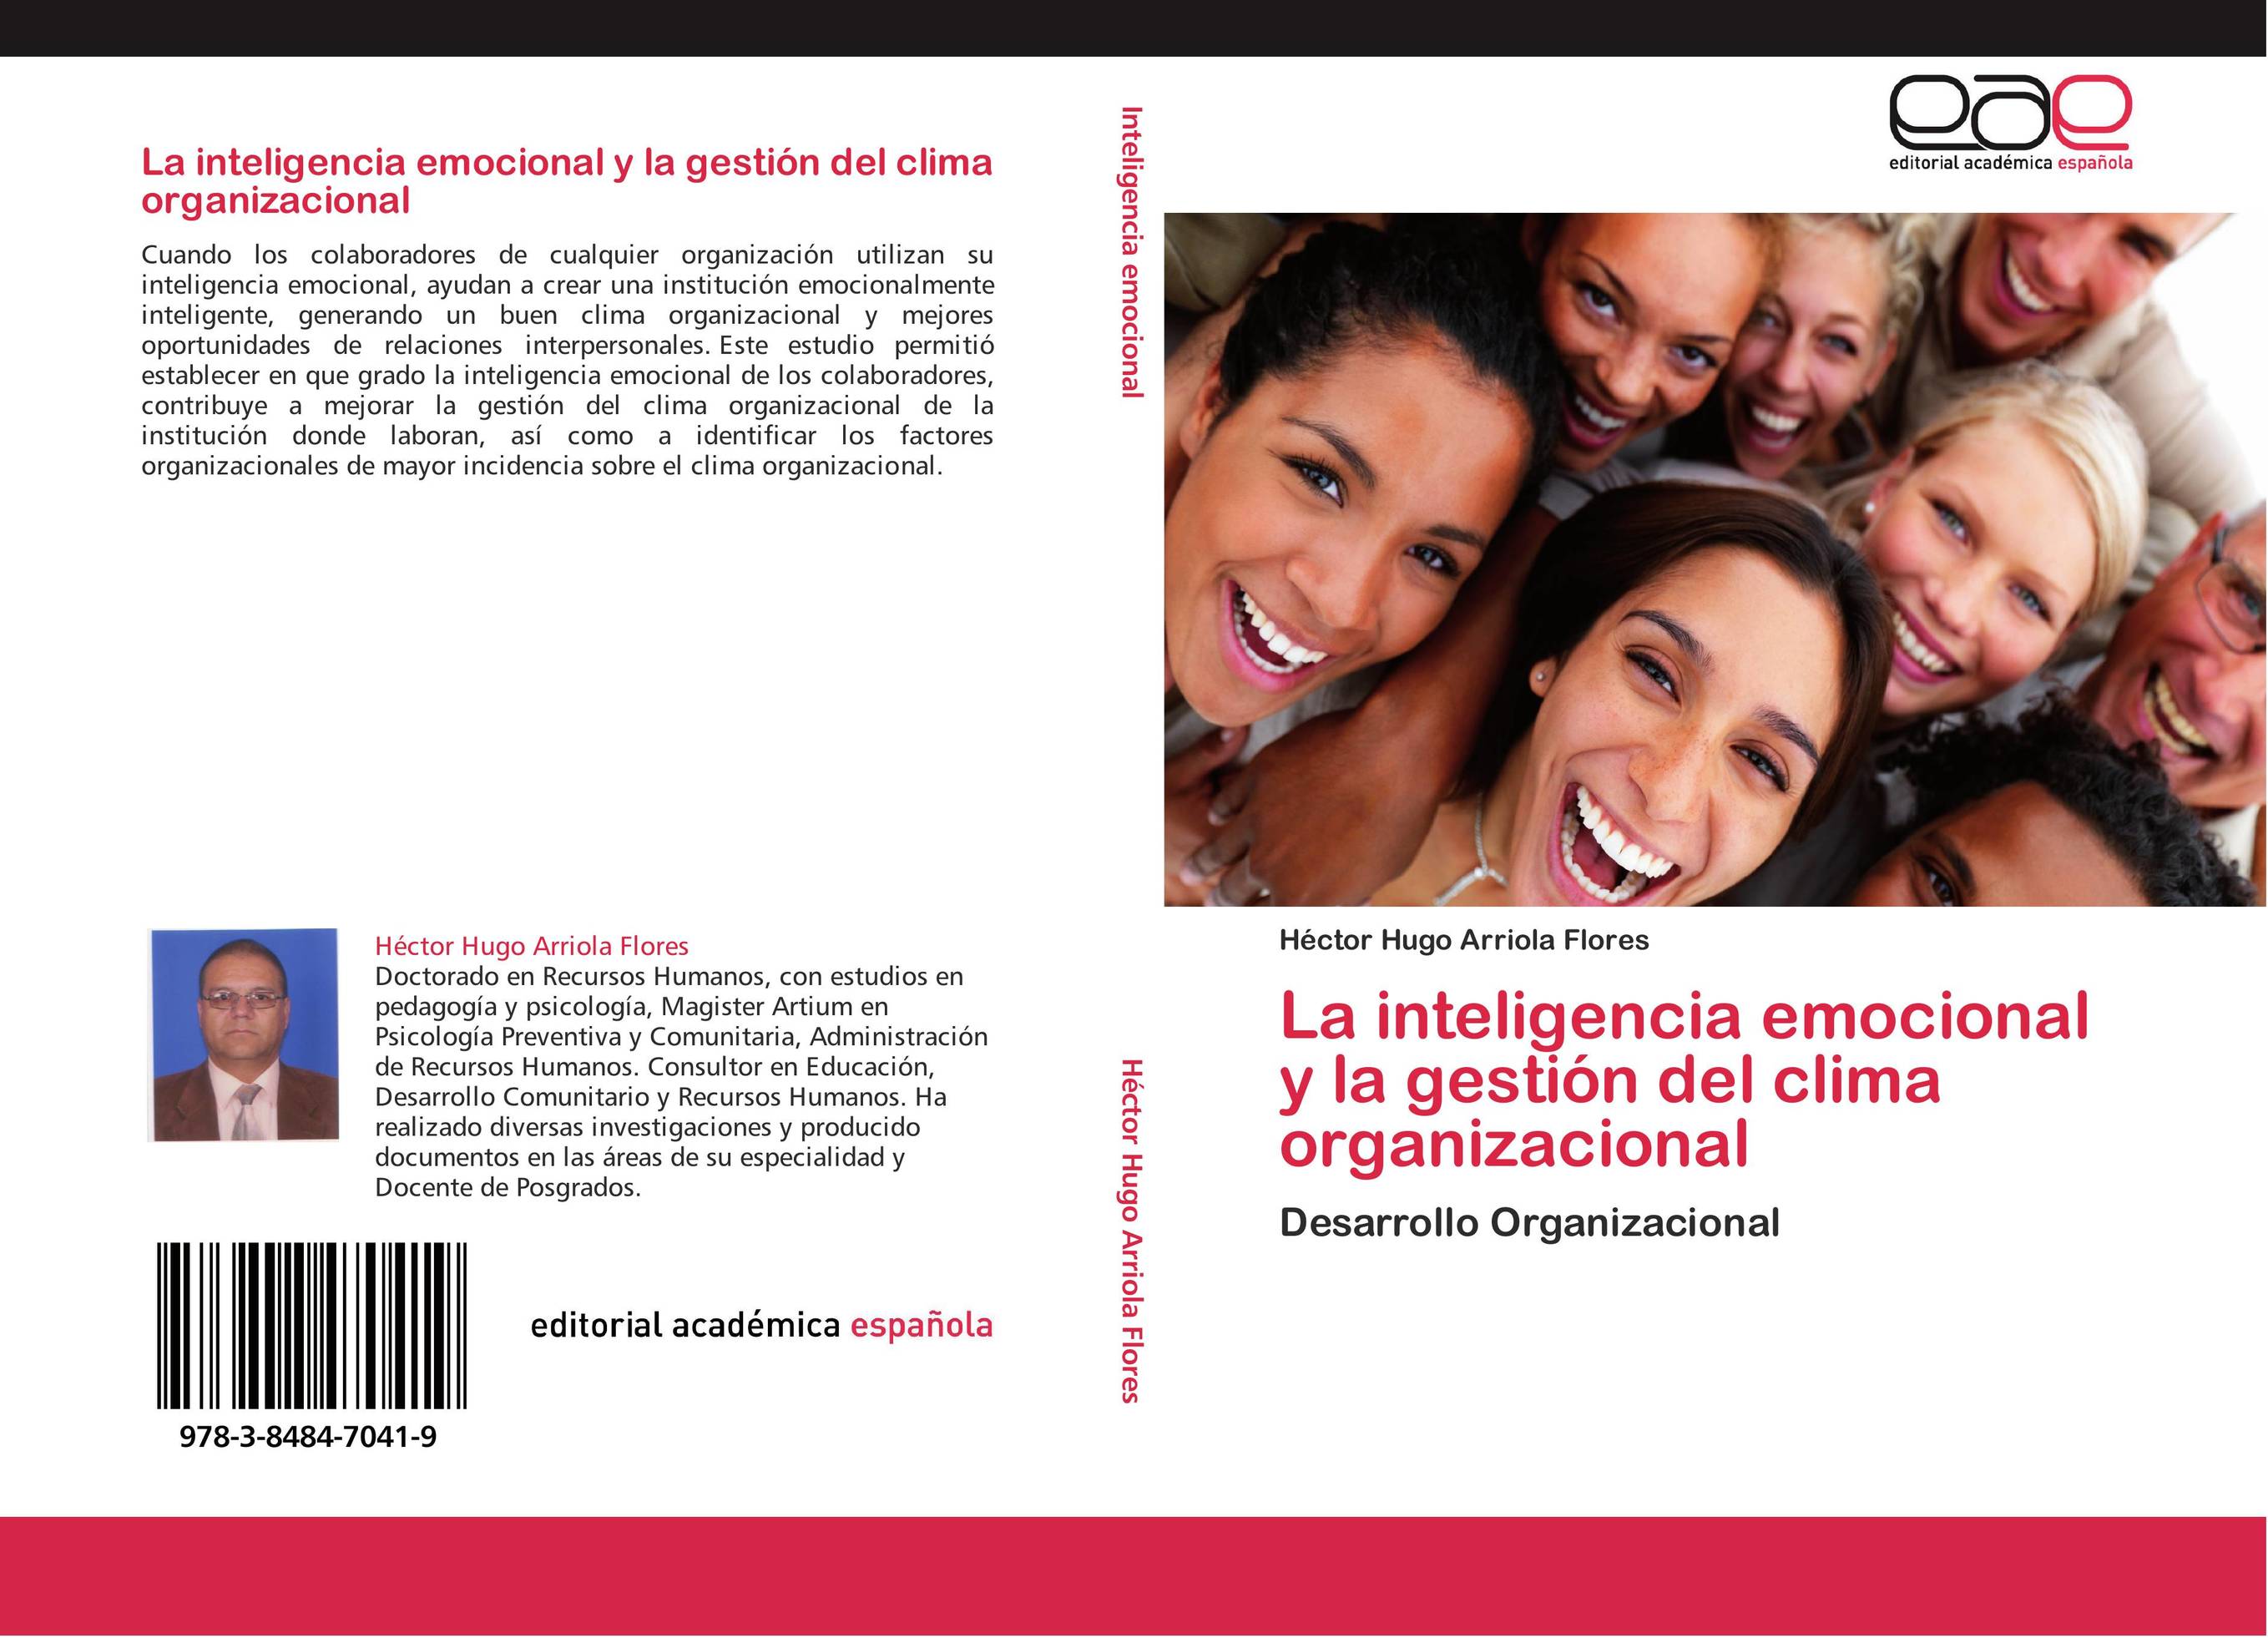 La inteligencia emocional y la gestión del clima organizacional